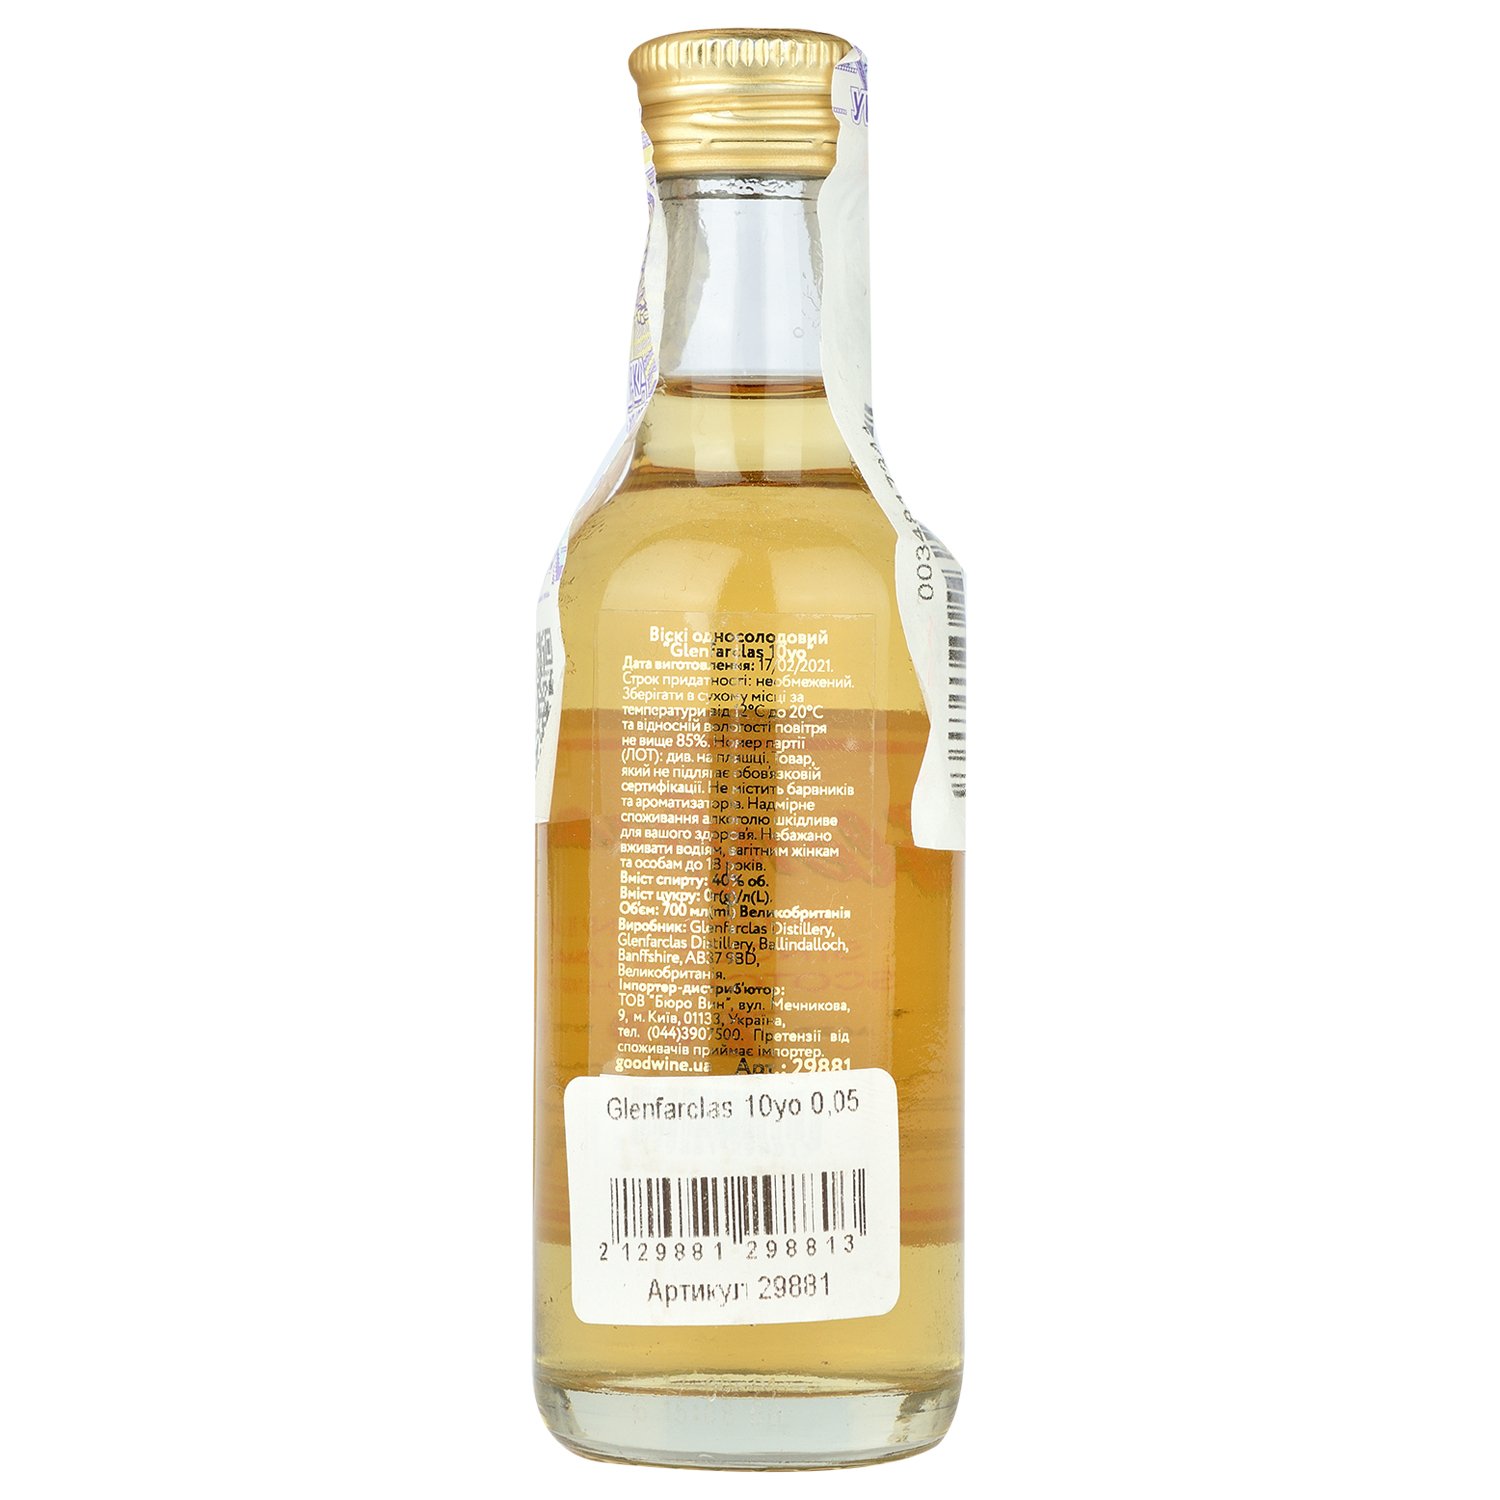 Віскі Glenfarclas Single Malt Scotch Whisky 10 yo, 40%, 0,05 л - фото 2